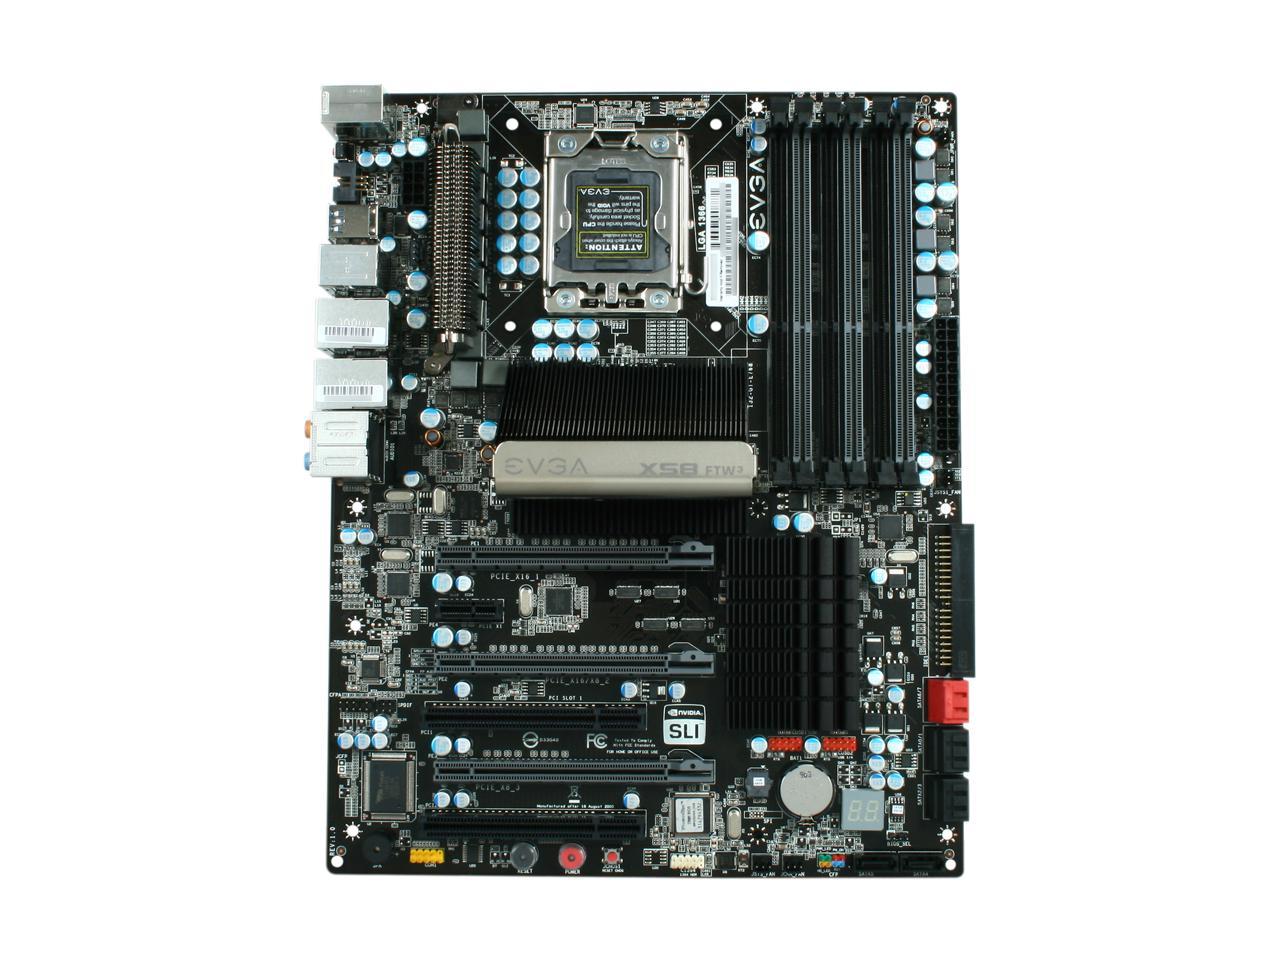 EVGA X58 FTW3 132-GT-E768-KR LGA 1366 SATA 6Gb/s USB 3.0 ATX Intel